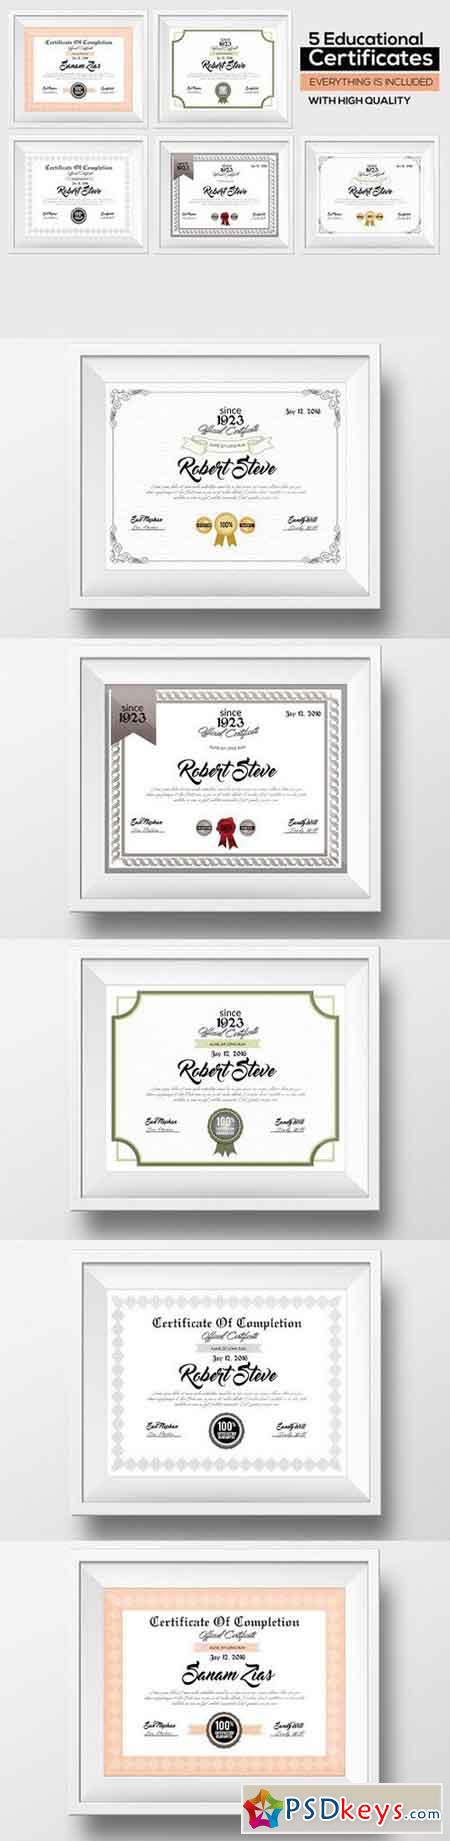 5 Certificate & Diploma Bundle 783079